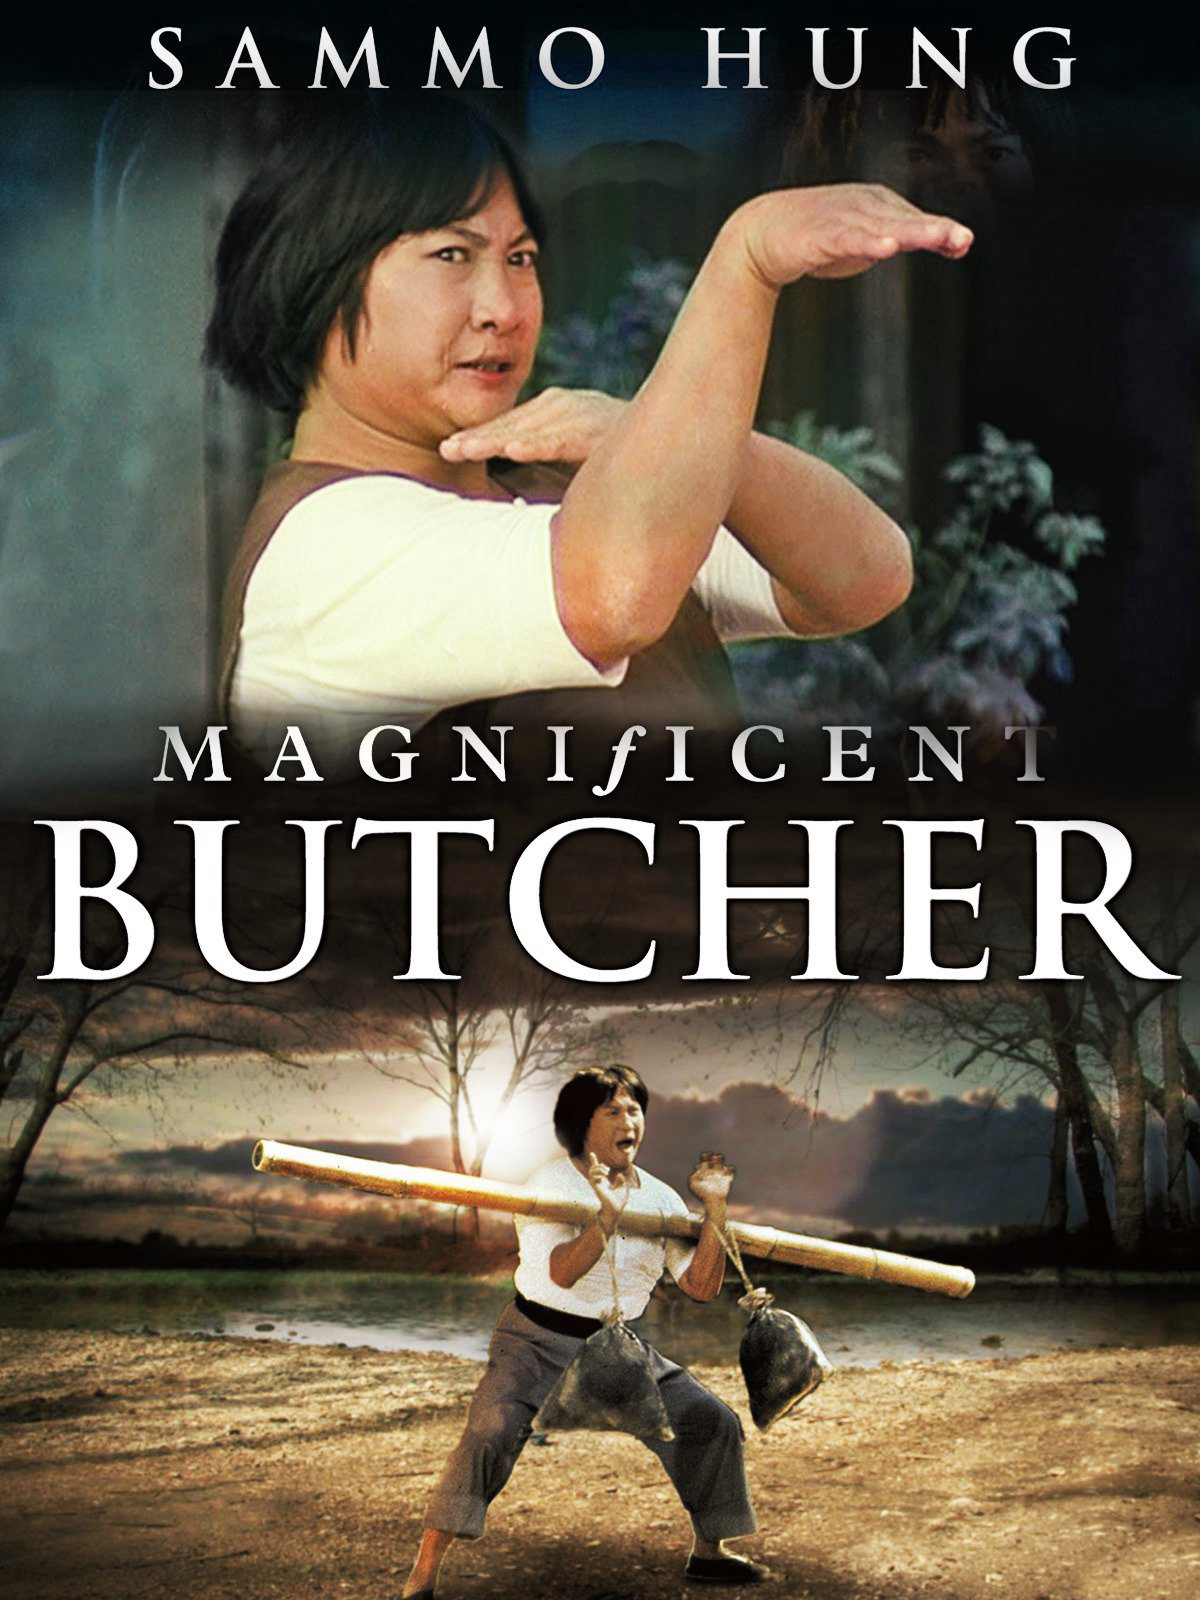 Poster Phim Lâm Thế Vinh (Magnificent Butcher)